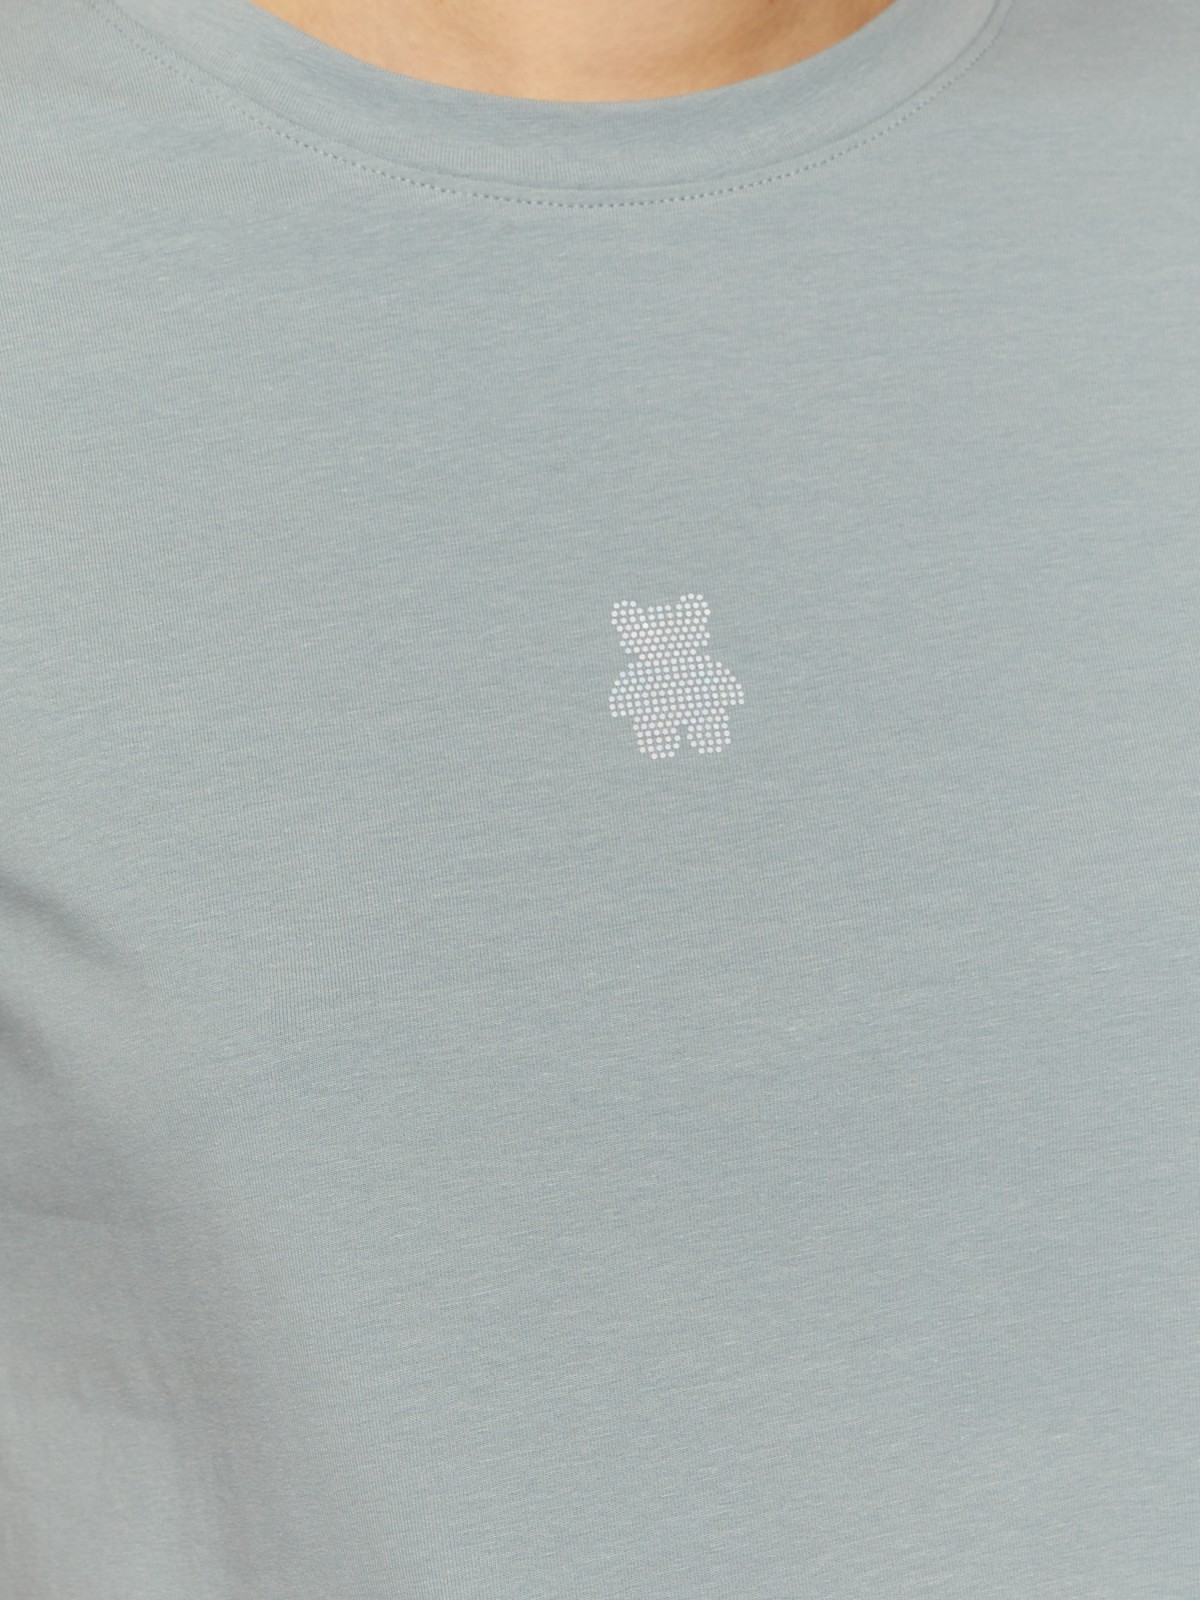 Трикотажная футболка из хлопка со стразами zolla 024213273593, цвет мятный, размер XS - фото 4